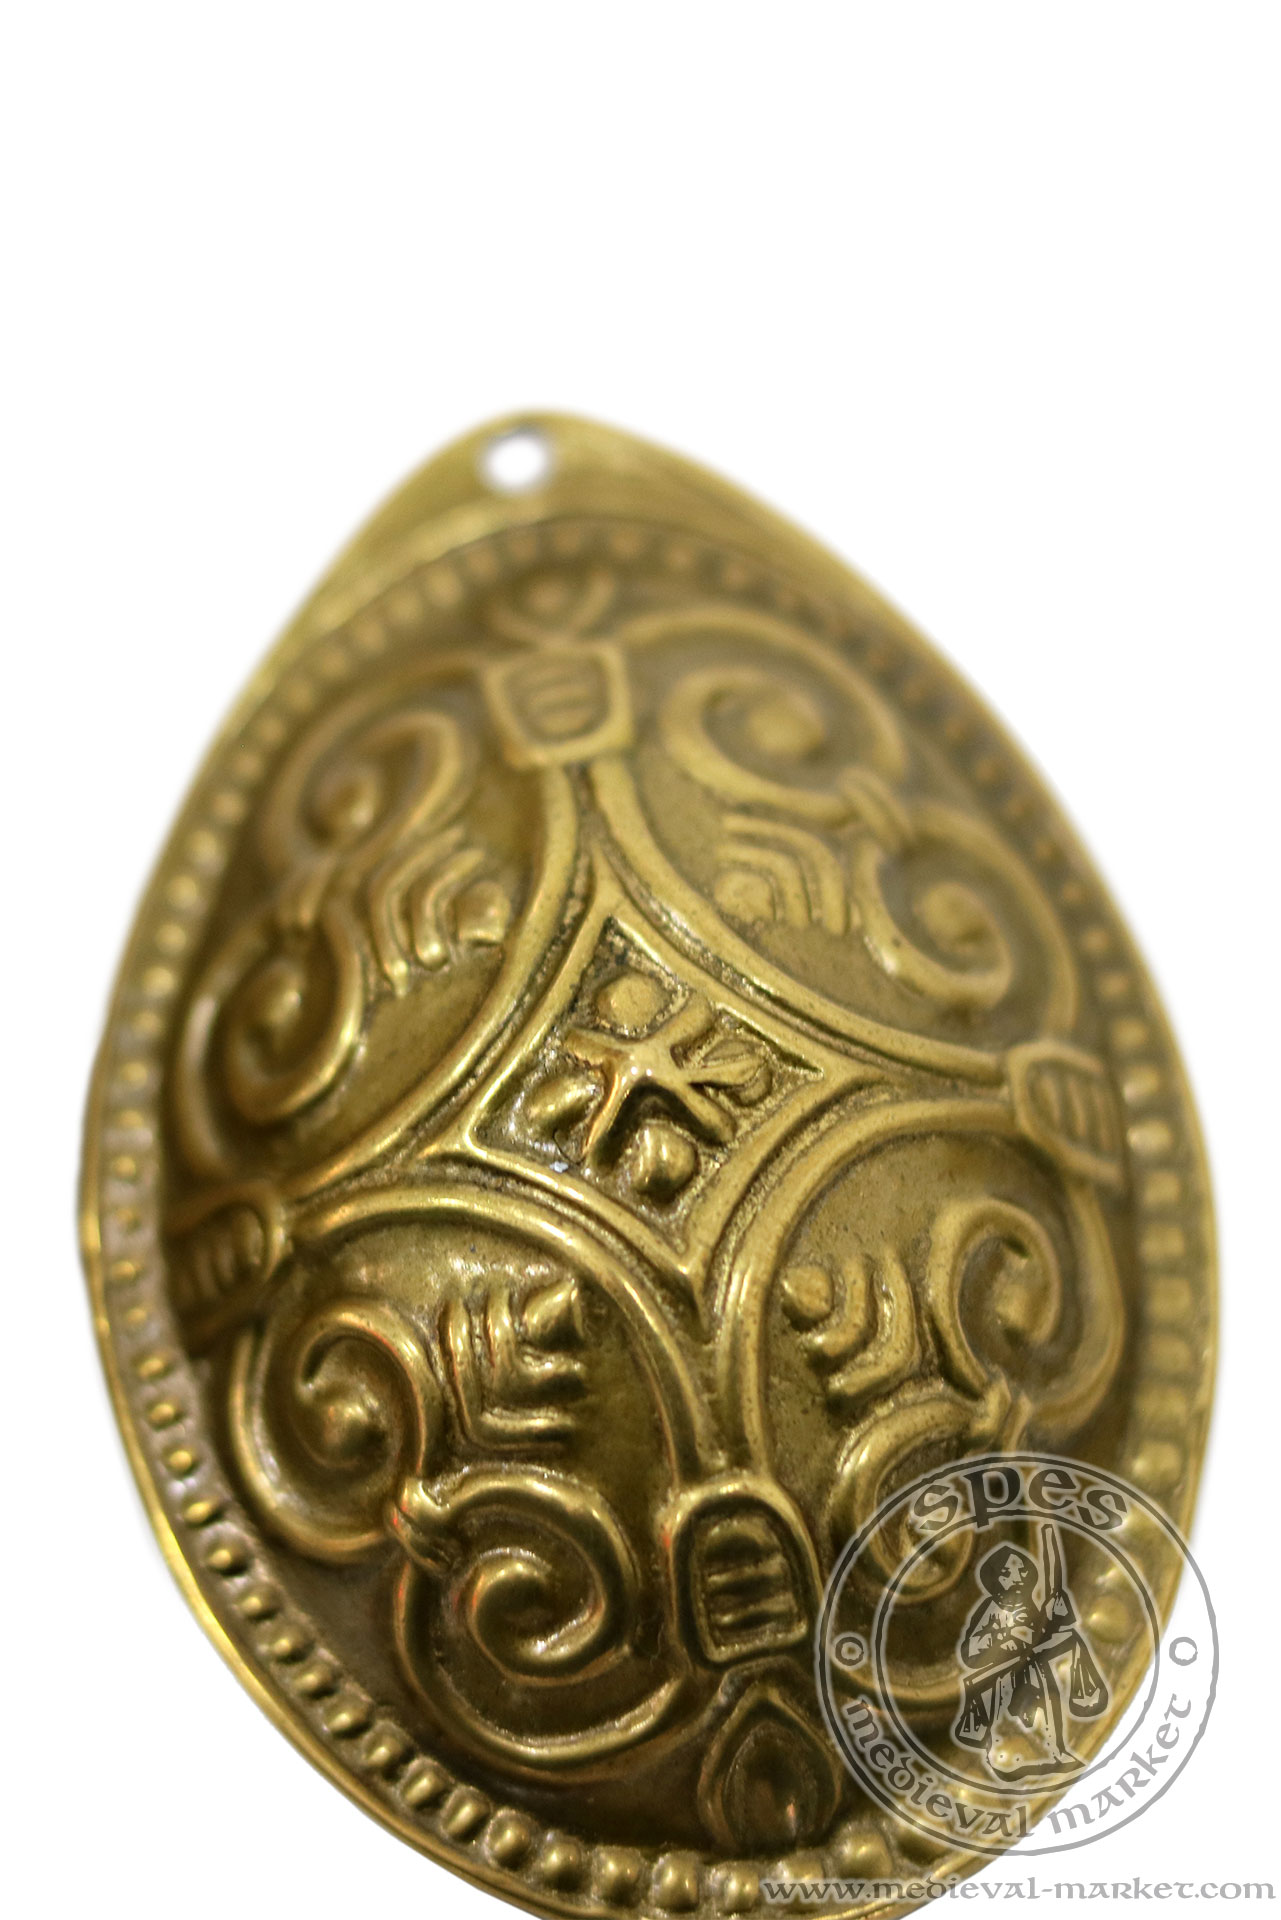 Viking oval brooch. MEDIEVAL MARKET - SPES.